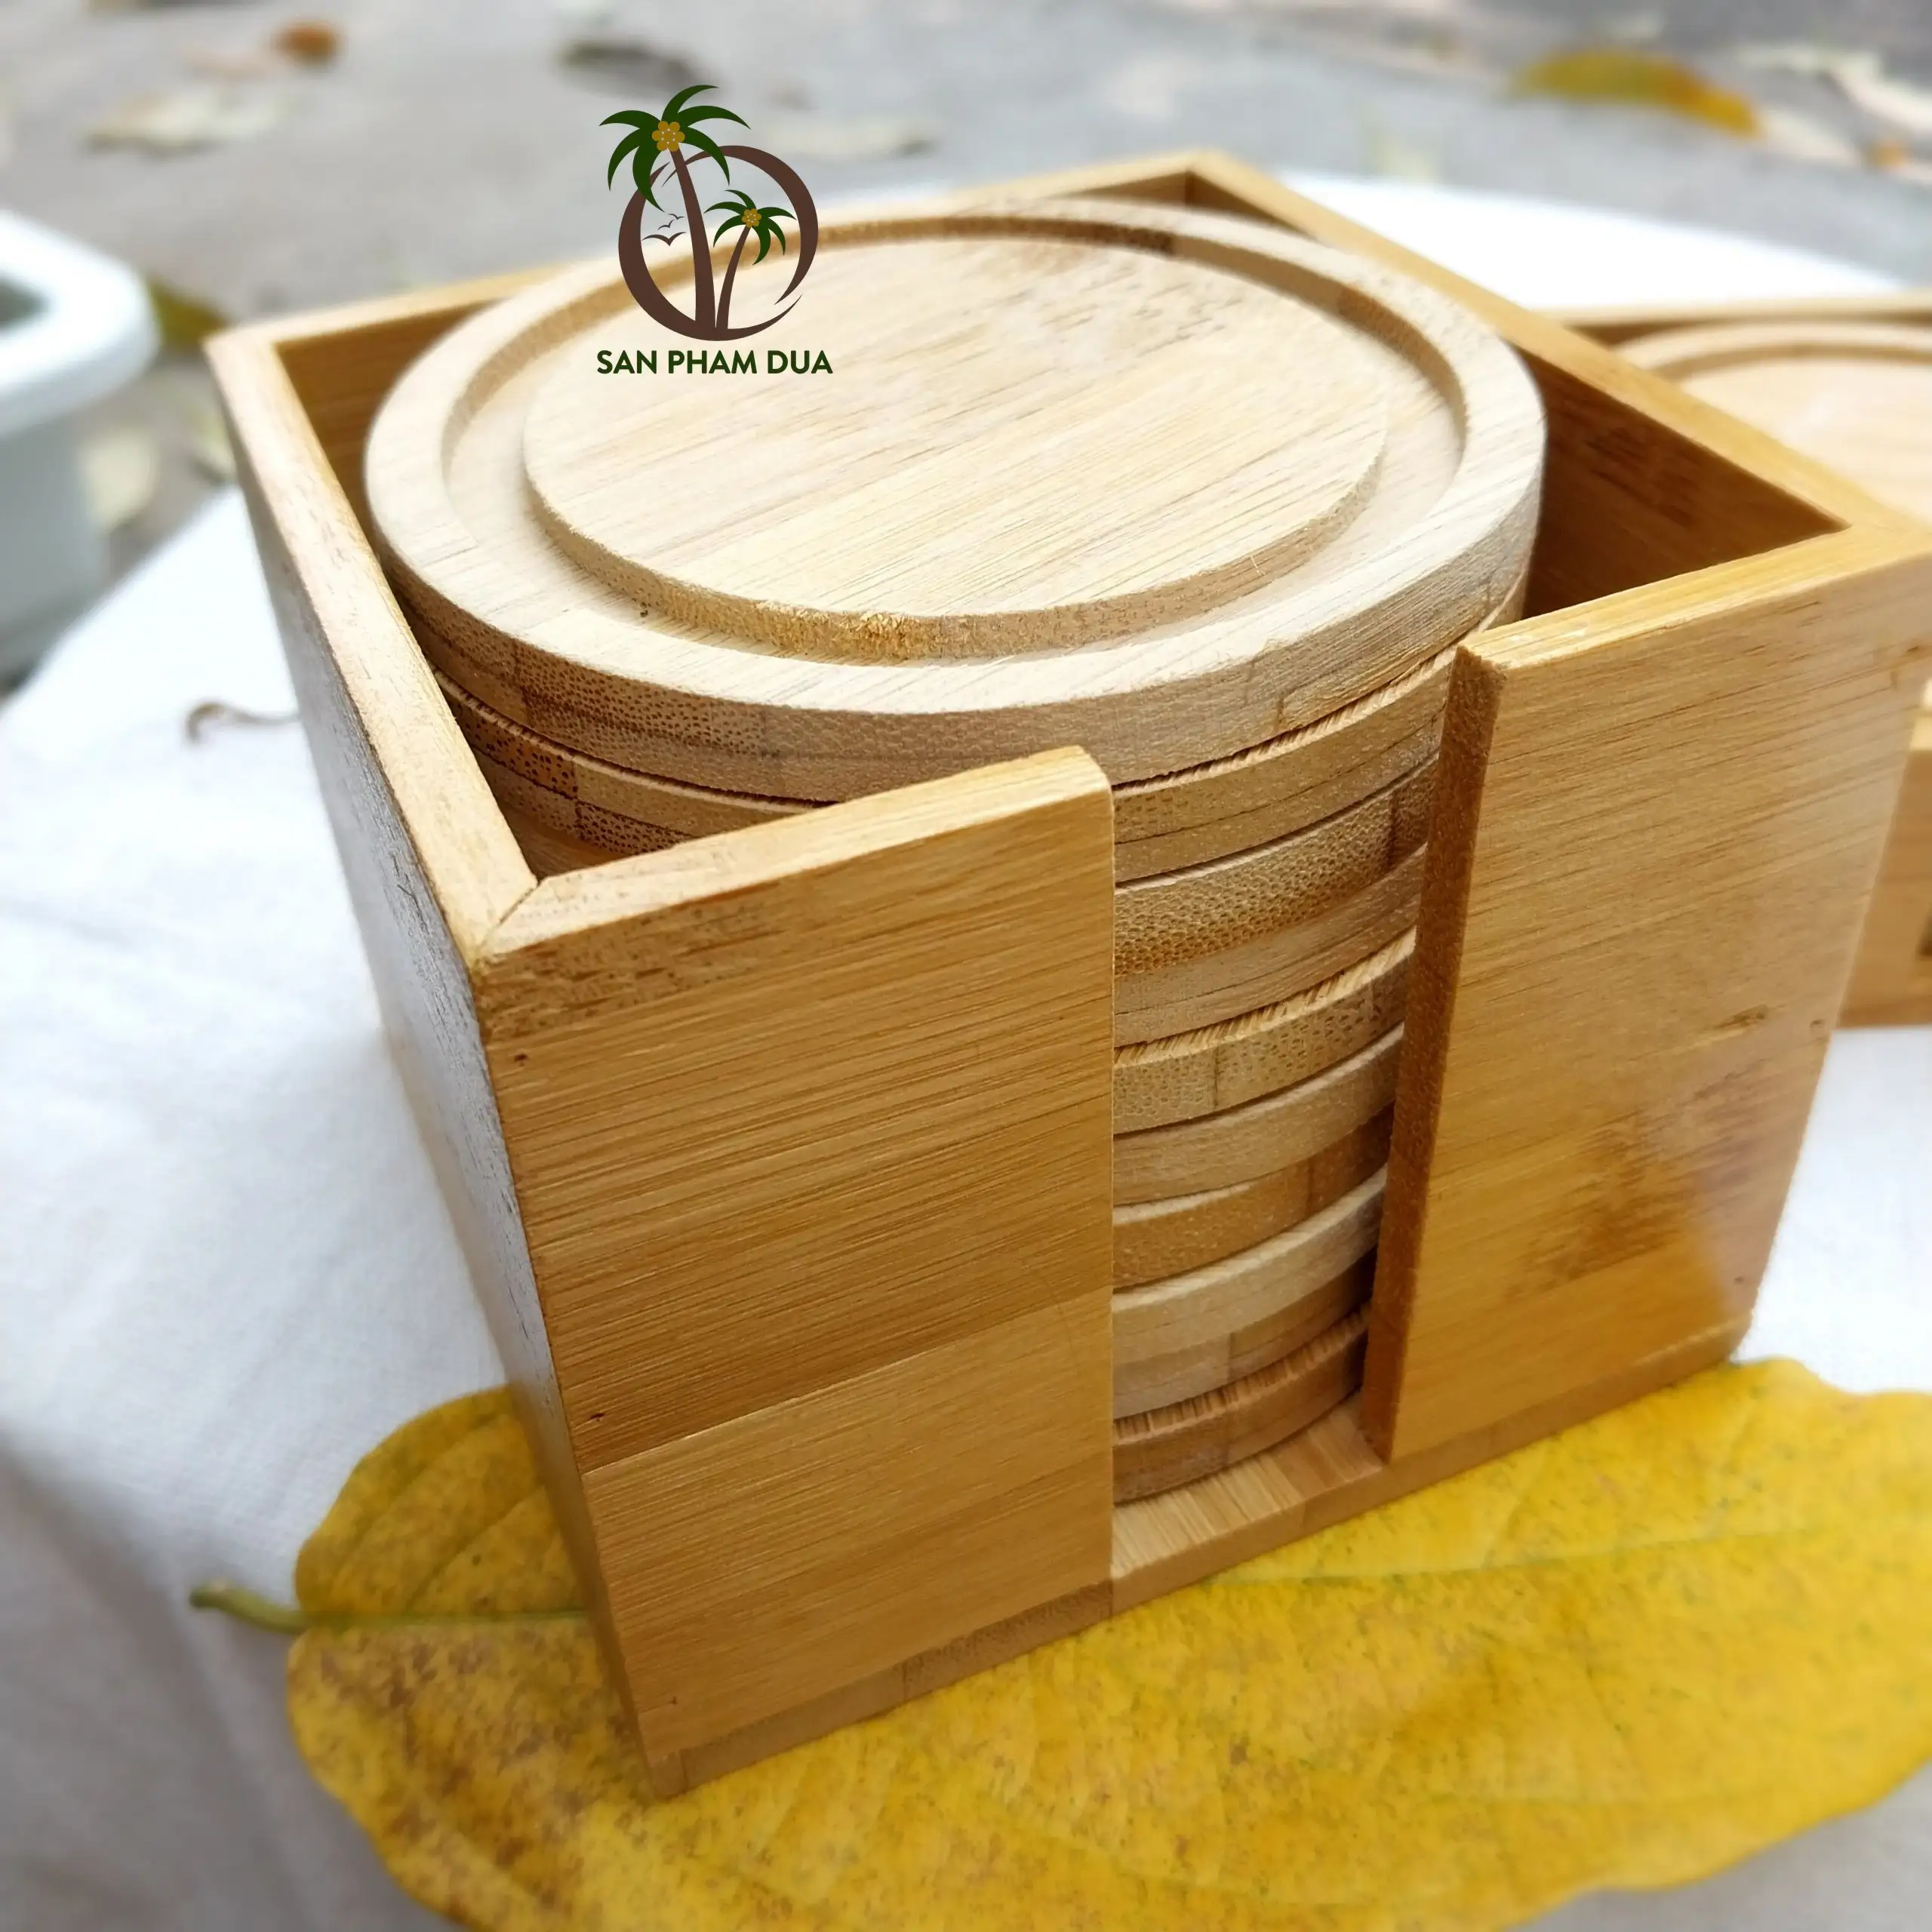 Оптовая продажа, бамбуковые подставки, Набор бамбуковых подставок, экологичные подставки из бамбука для чашек во Вьетнаме